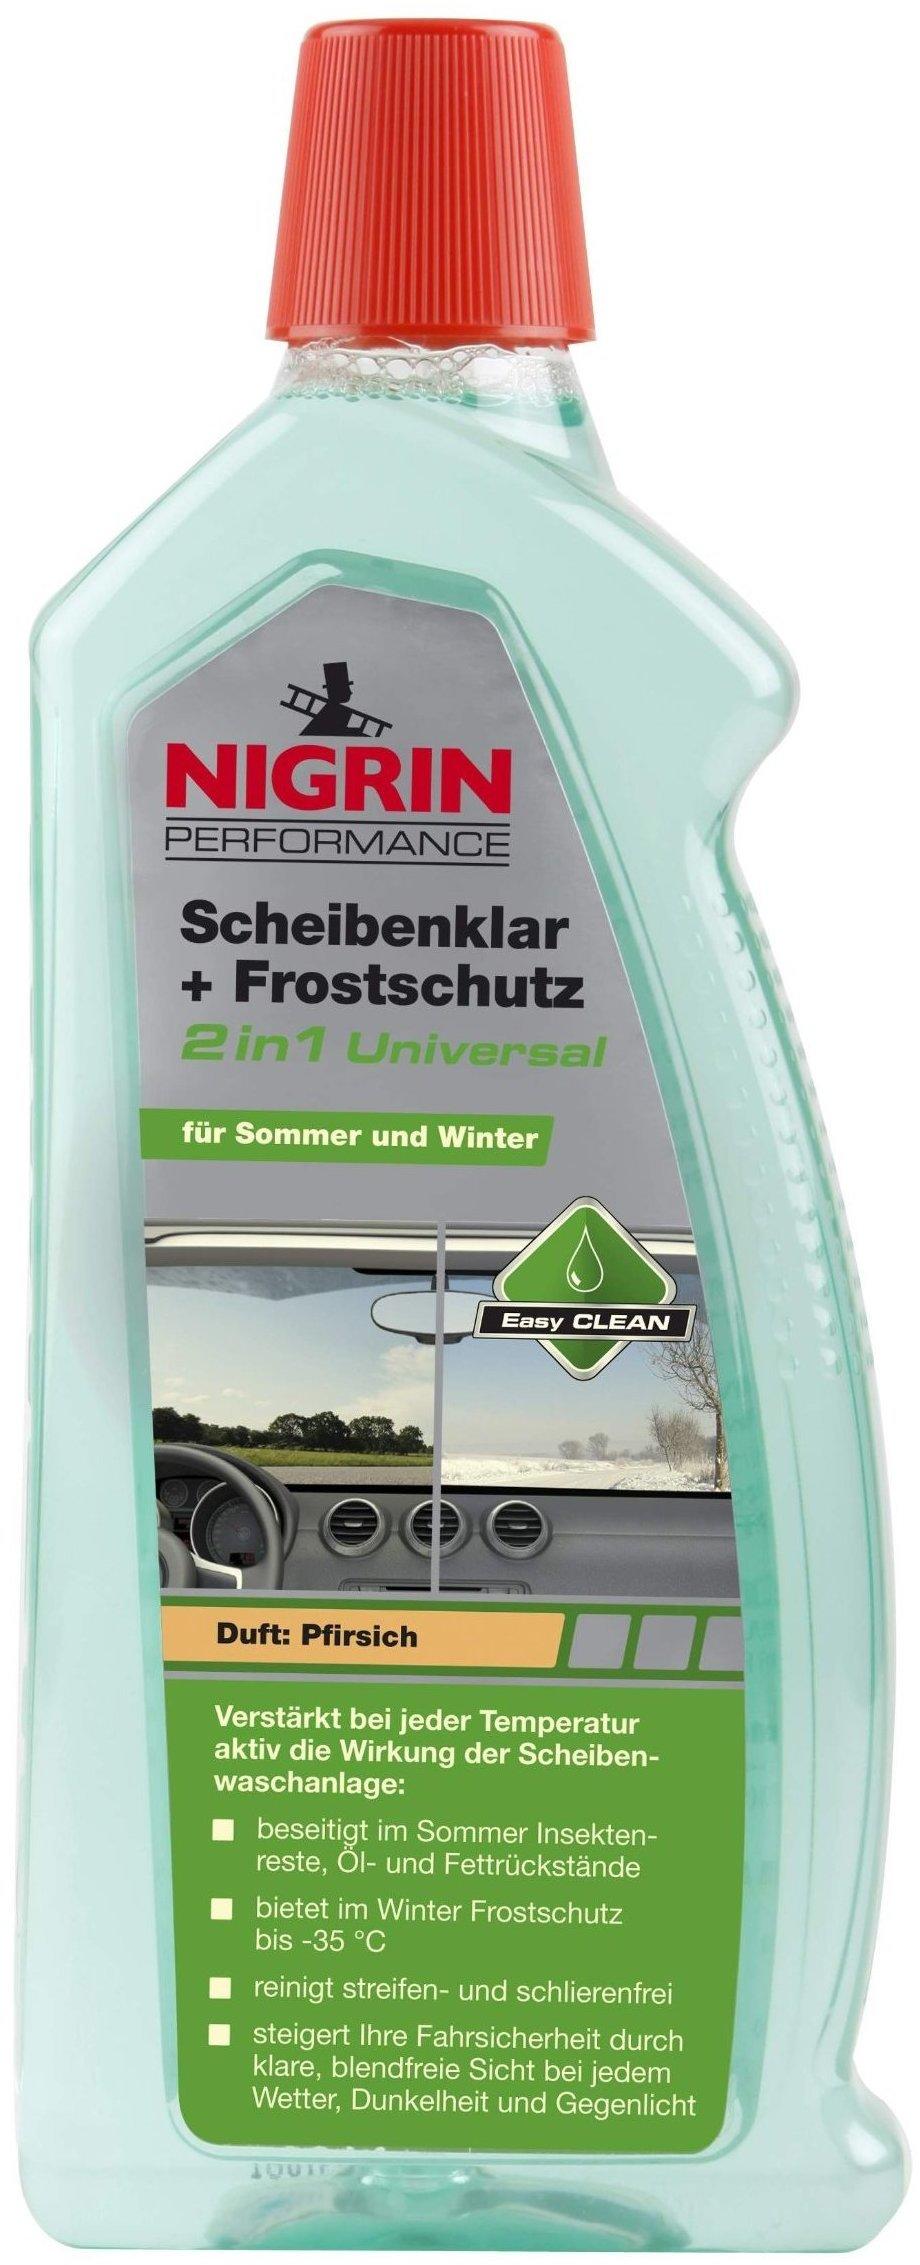 Nigrin Performance Scheibenklar + Frostschutz 2in1 Universal (1 l